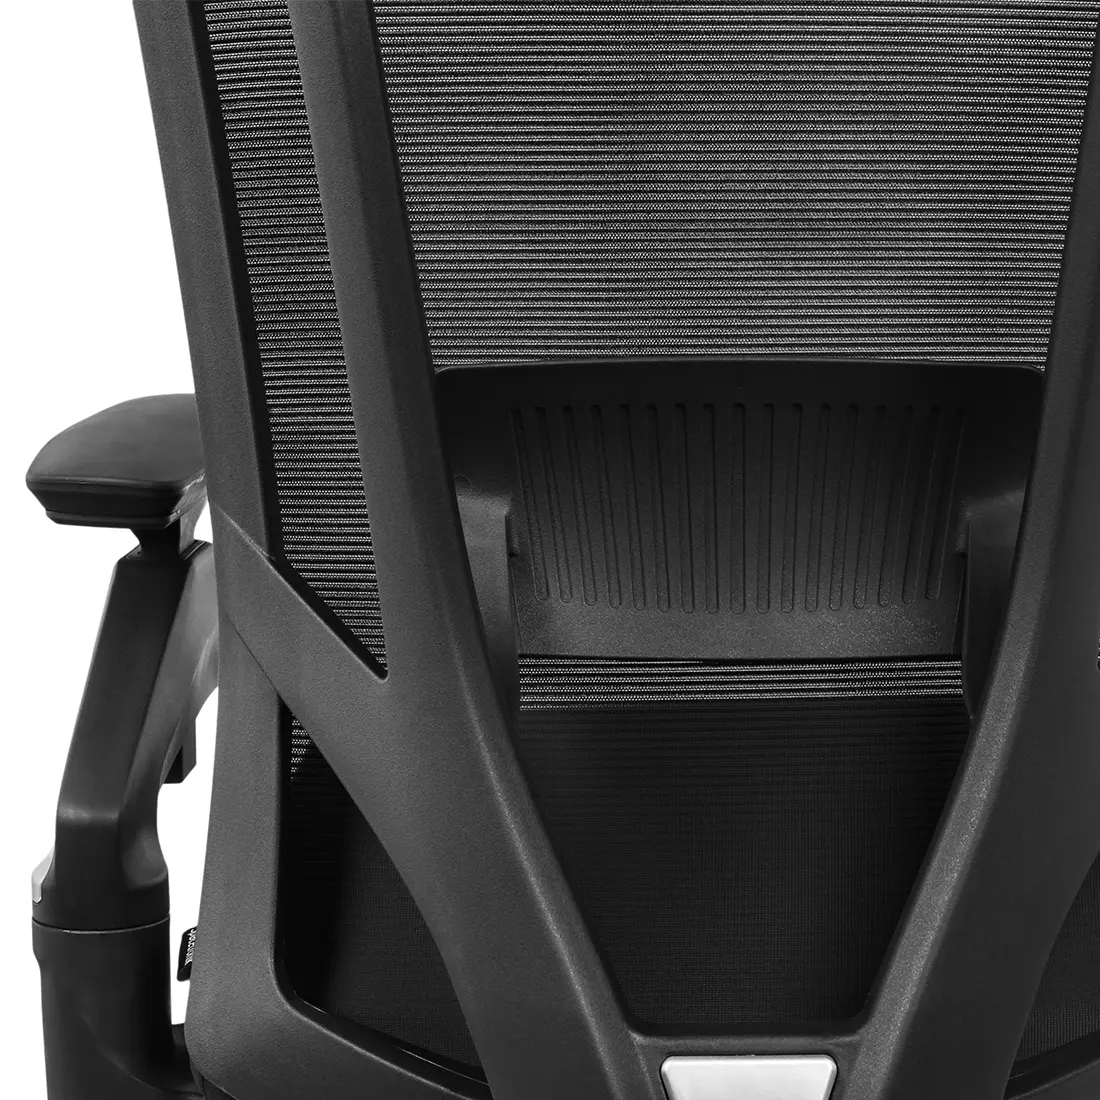 Fotel ergonomiczny biurowy z podłokietnikiem 4D Spacetronik GERD OUTLET